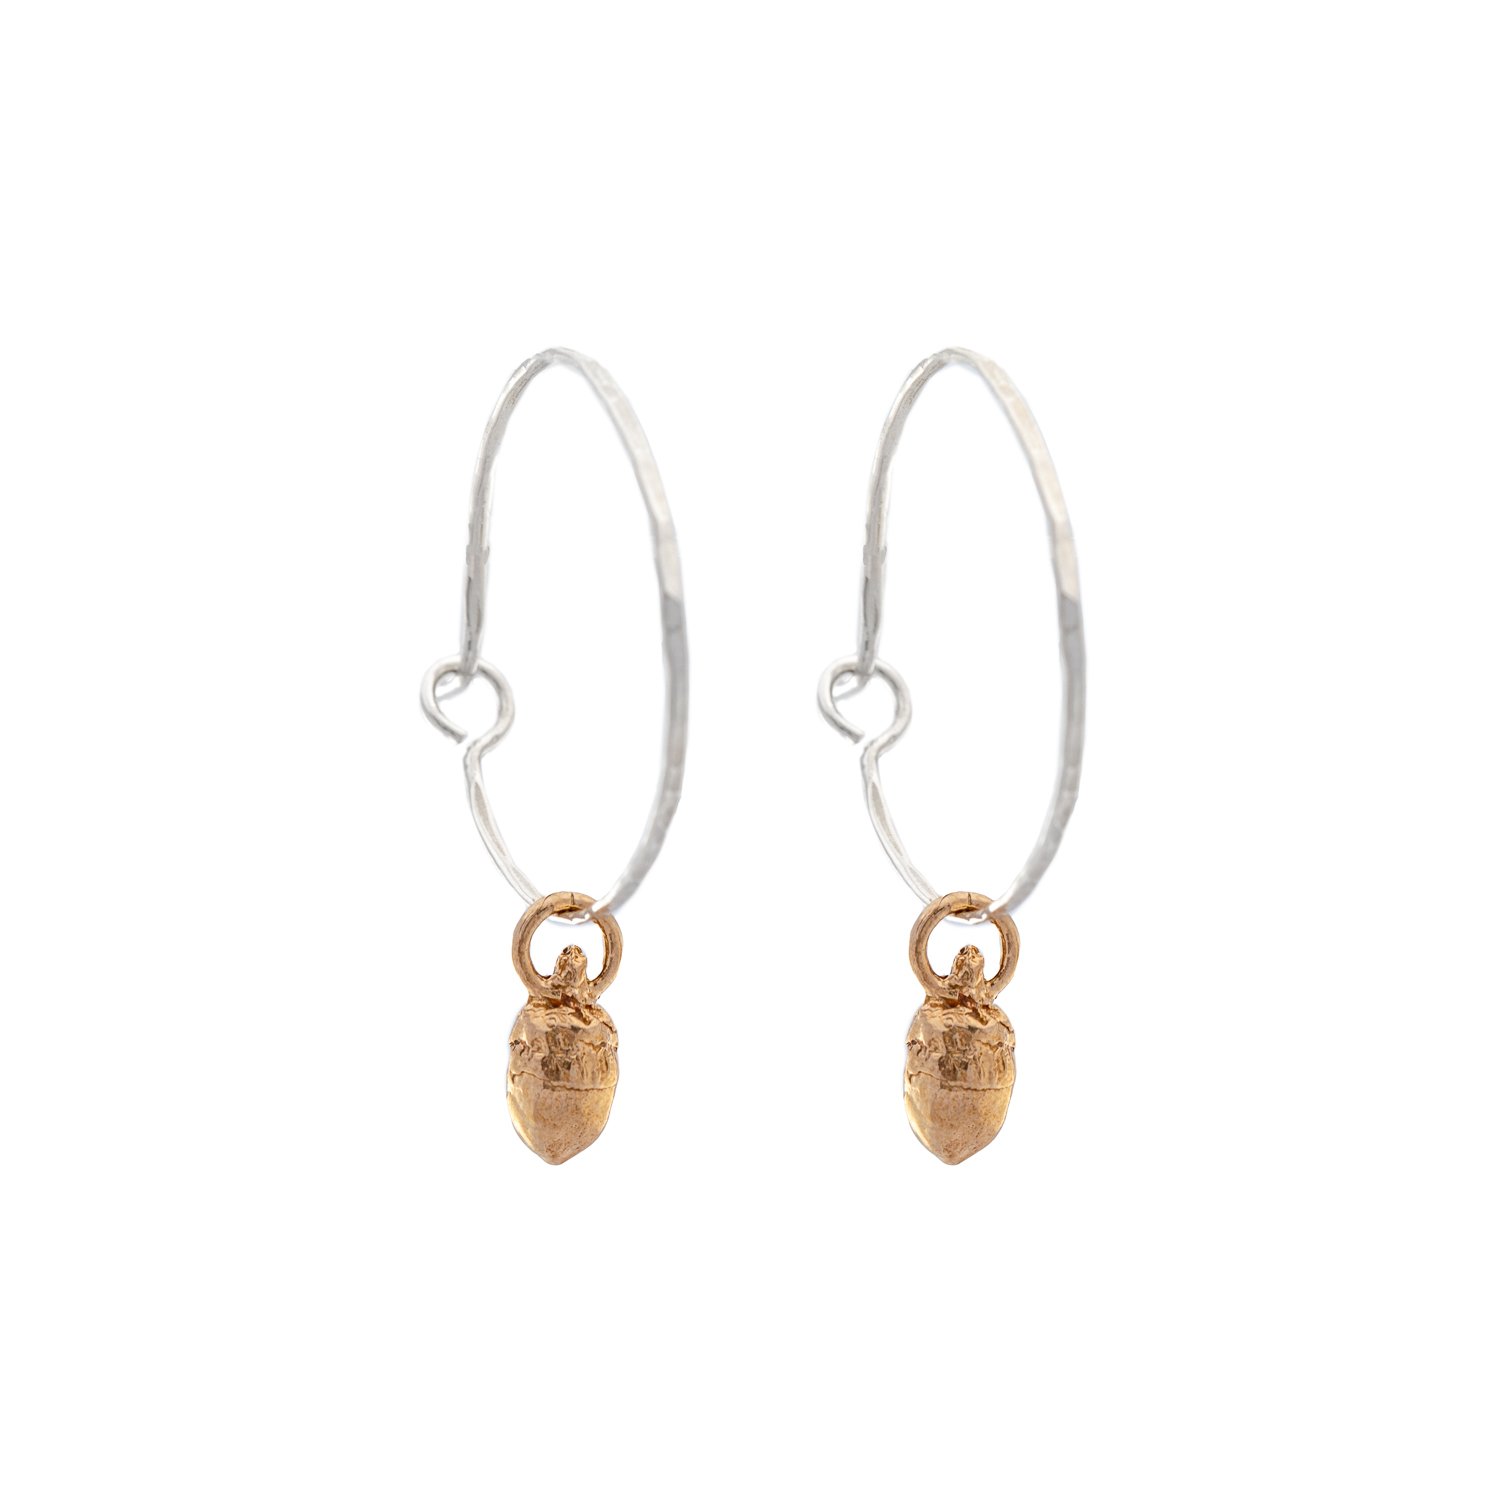 acorn-earrings-bronze-hoops.jpg